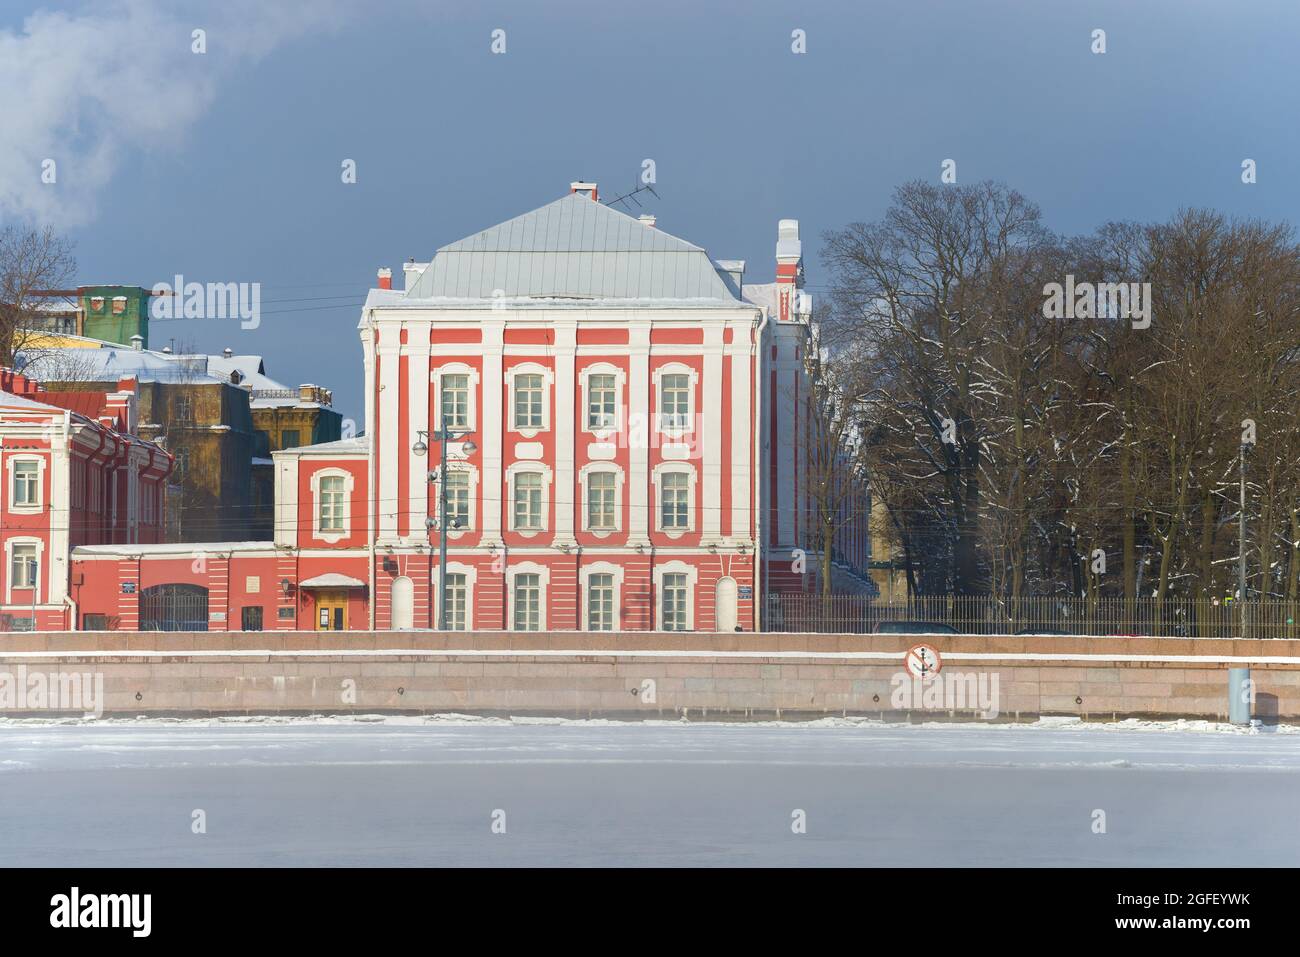 SANKT PETERSBURG, RUSSLAND - 15. FEBRUAR 2021: Antikes Gebäude von 12 Colleges (derzeit eines der Gebäude der St. Petersburger Universität) Stockfoto